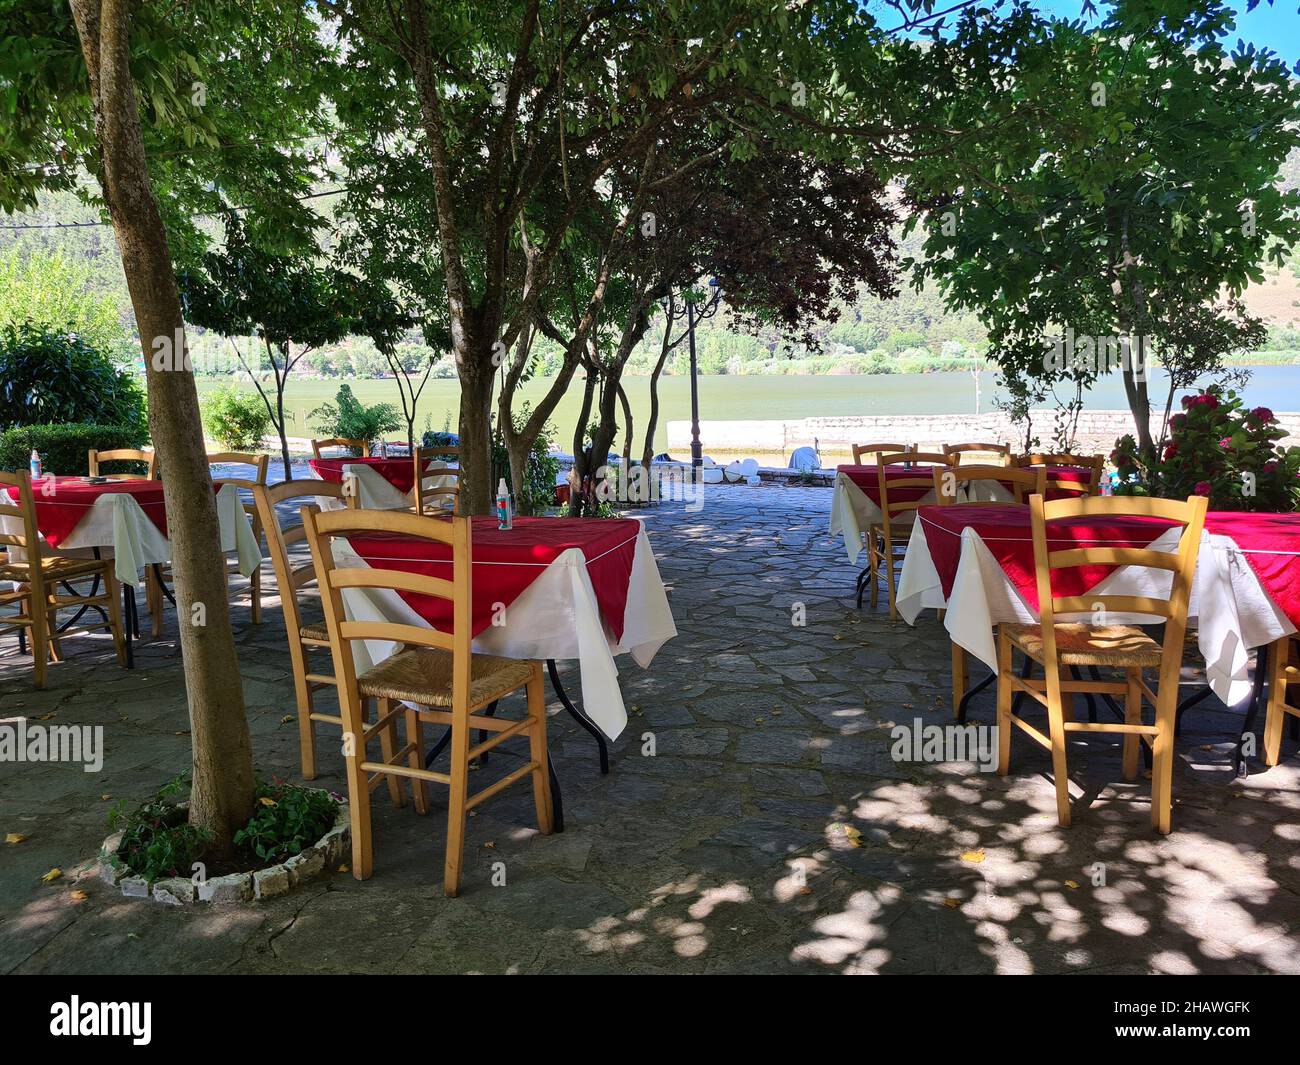 Ioannina, Grèce - 27 juin 2021: Tables avec spray pour la désinfection pendant la pandémie de corona dans le jardin d'un restaurant Banque D'Images